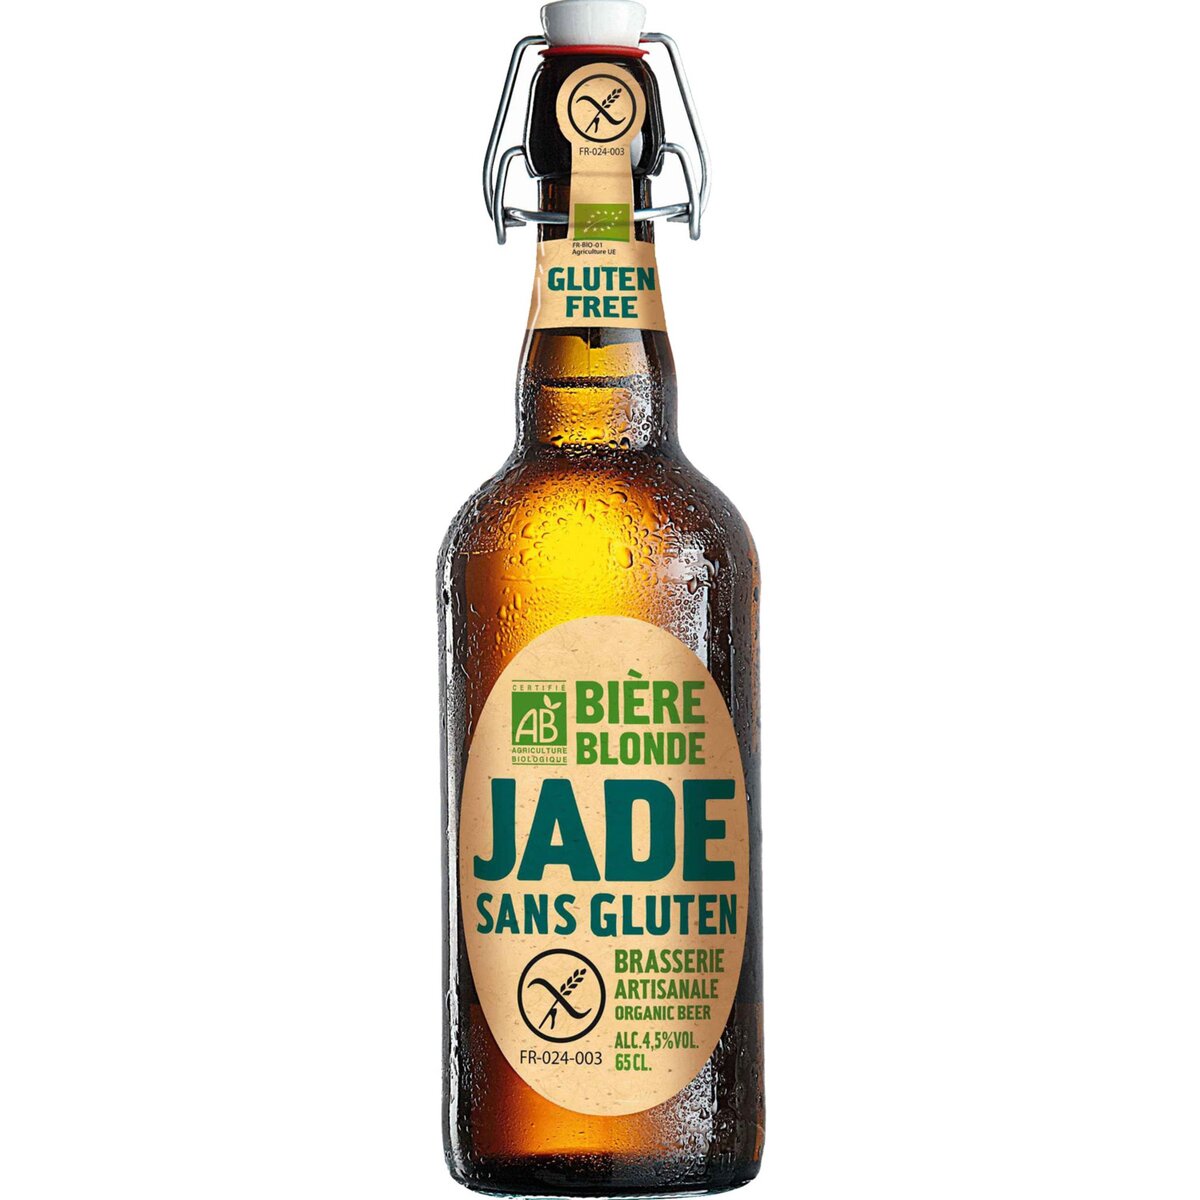 JADE Jade Bière blonde sans gluten bio 4,5% 65cl